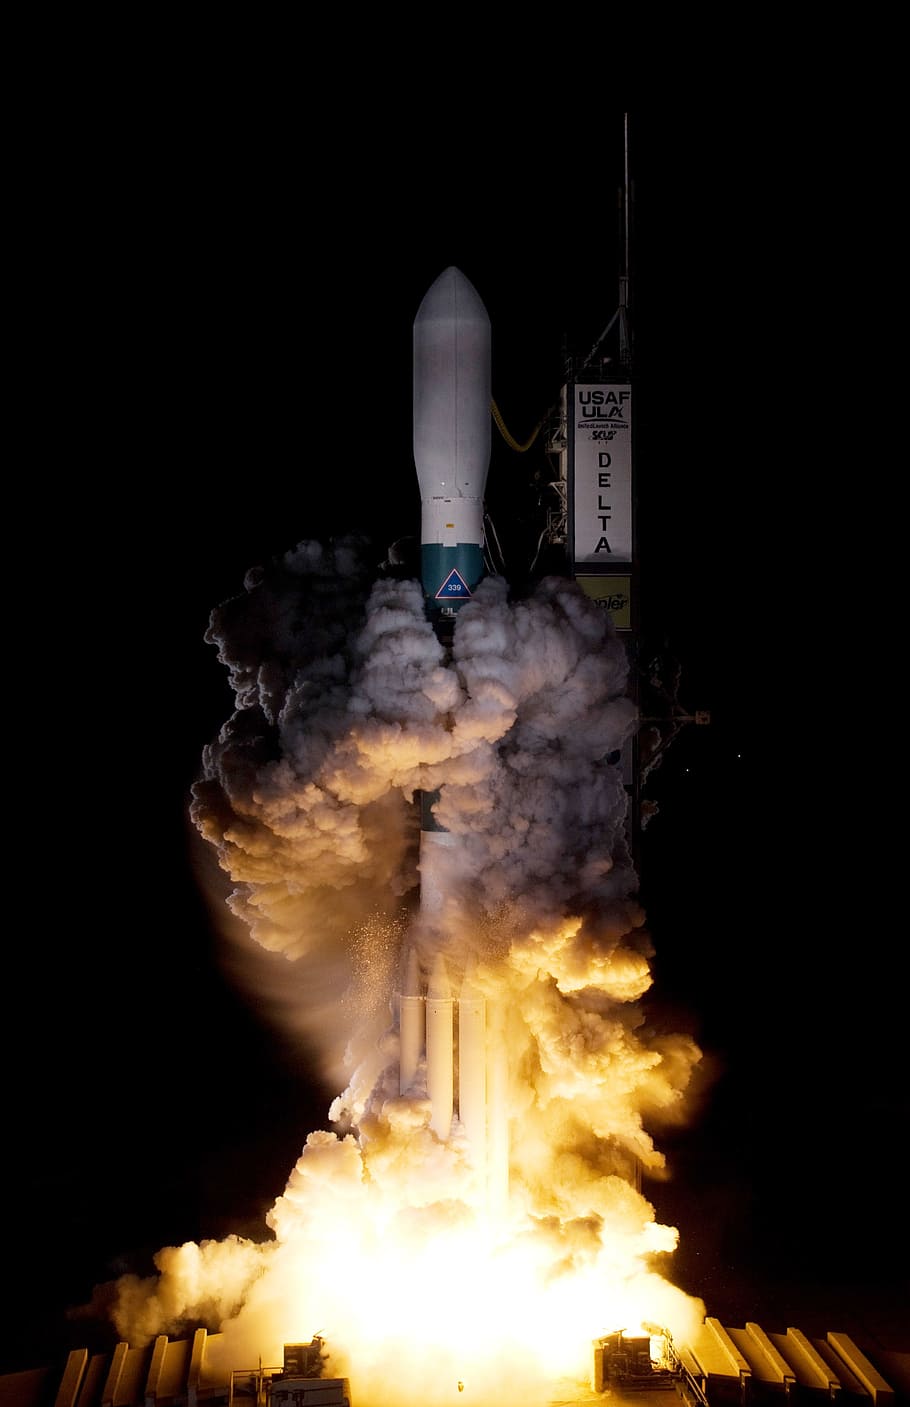 blanco] transbordador espacial, lanzamiento de cohete, misión de cohete, viaje espacial, despegue, kepler delta ii, arranque, motor a reacción, motor, nasa